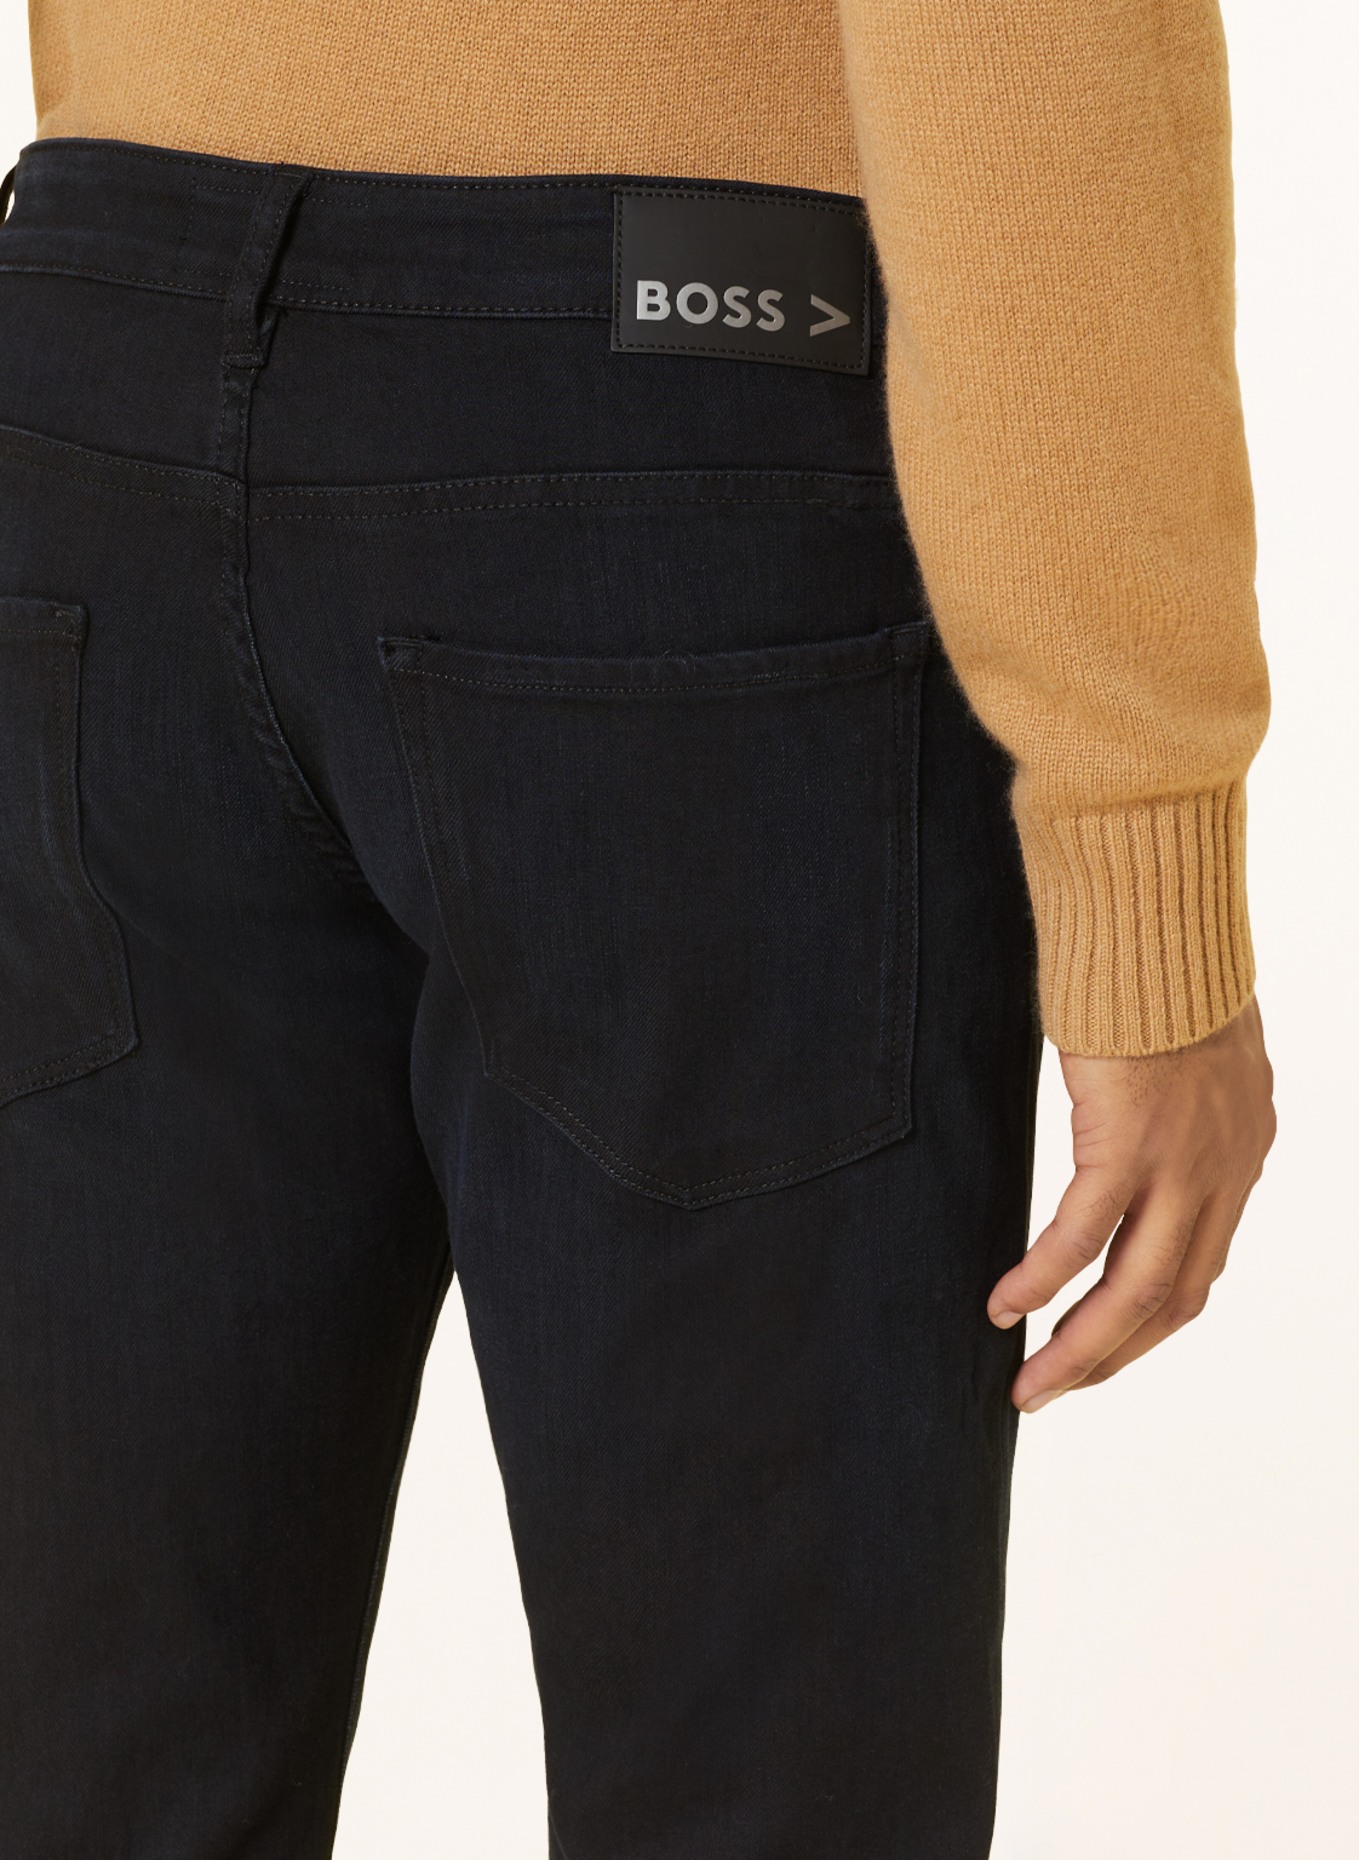 BOSS Jeans DELAWARE Slim Fit, Farbe: 006 BLACK (Bild 5)